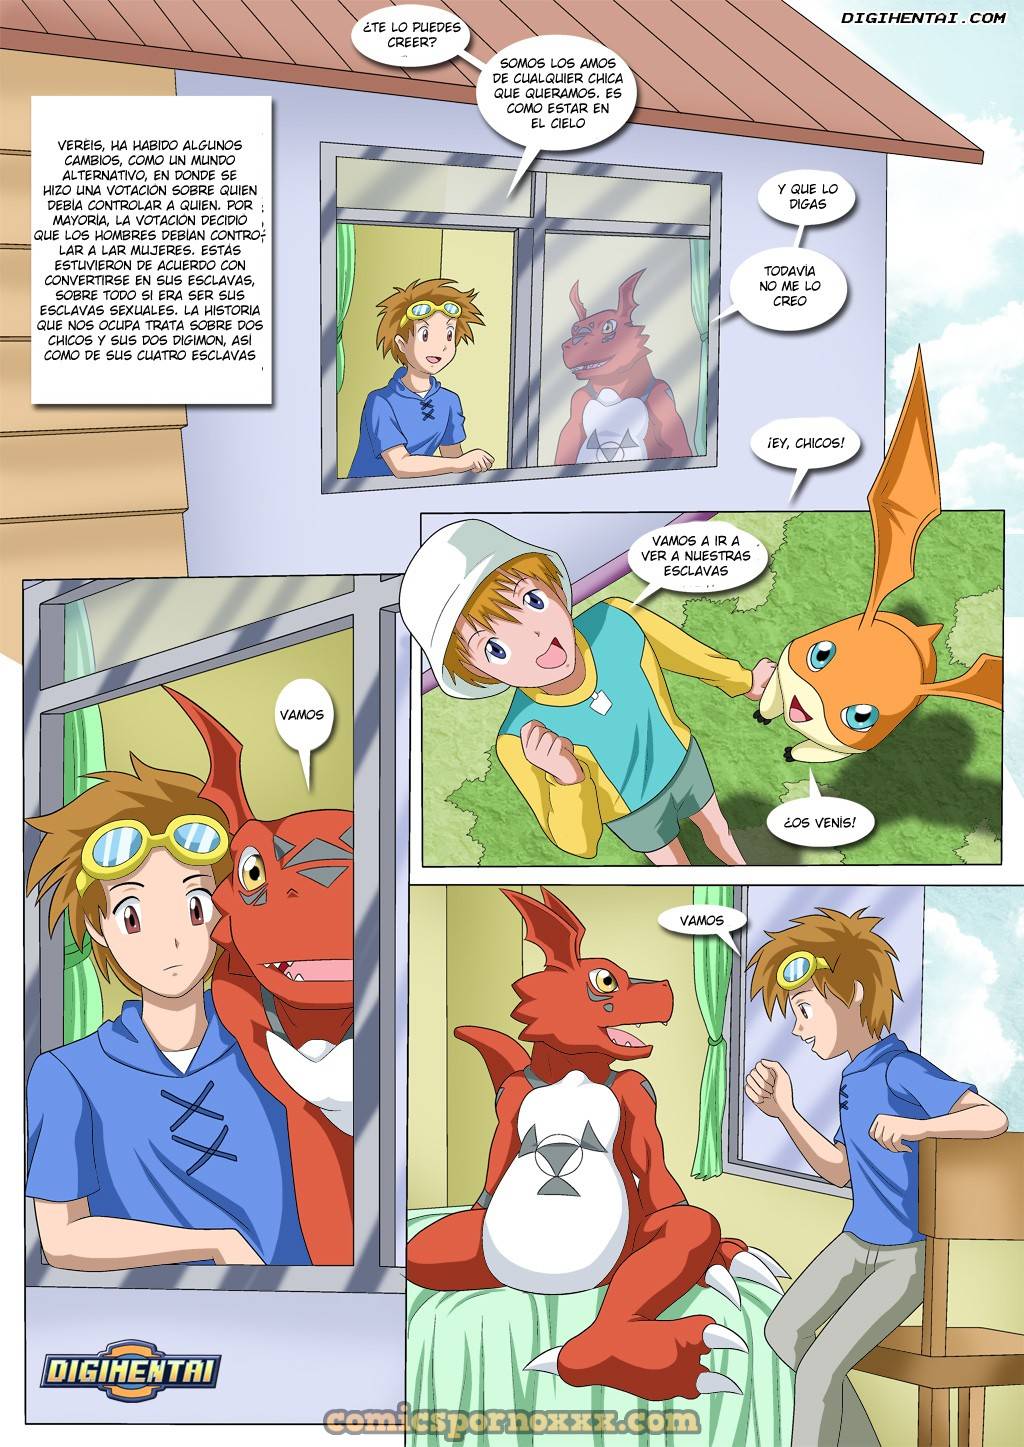 Cuando Los Chicos Dirigen El Mundo (Digimon Porno) - 2 - Comics Porno - Hentai Manga - Cartoon XXX